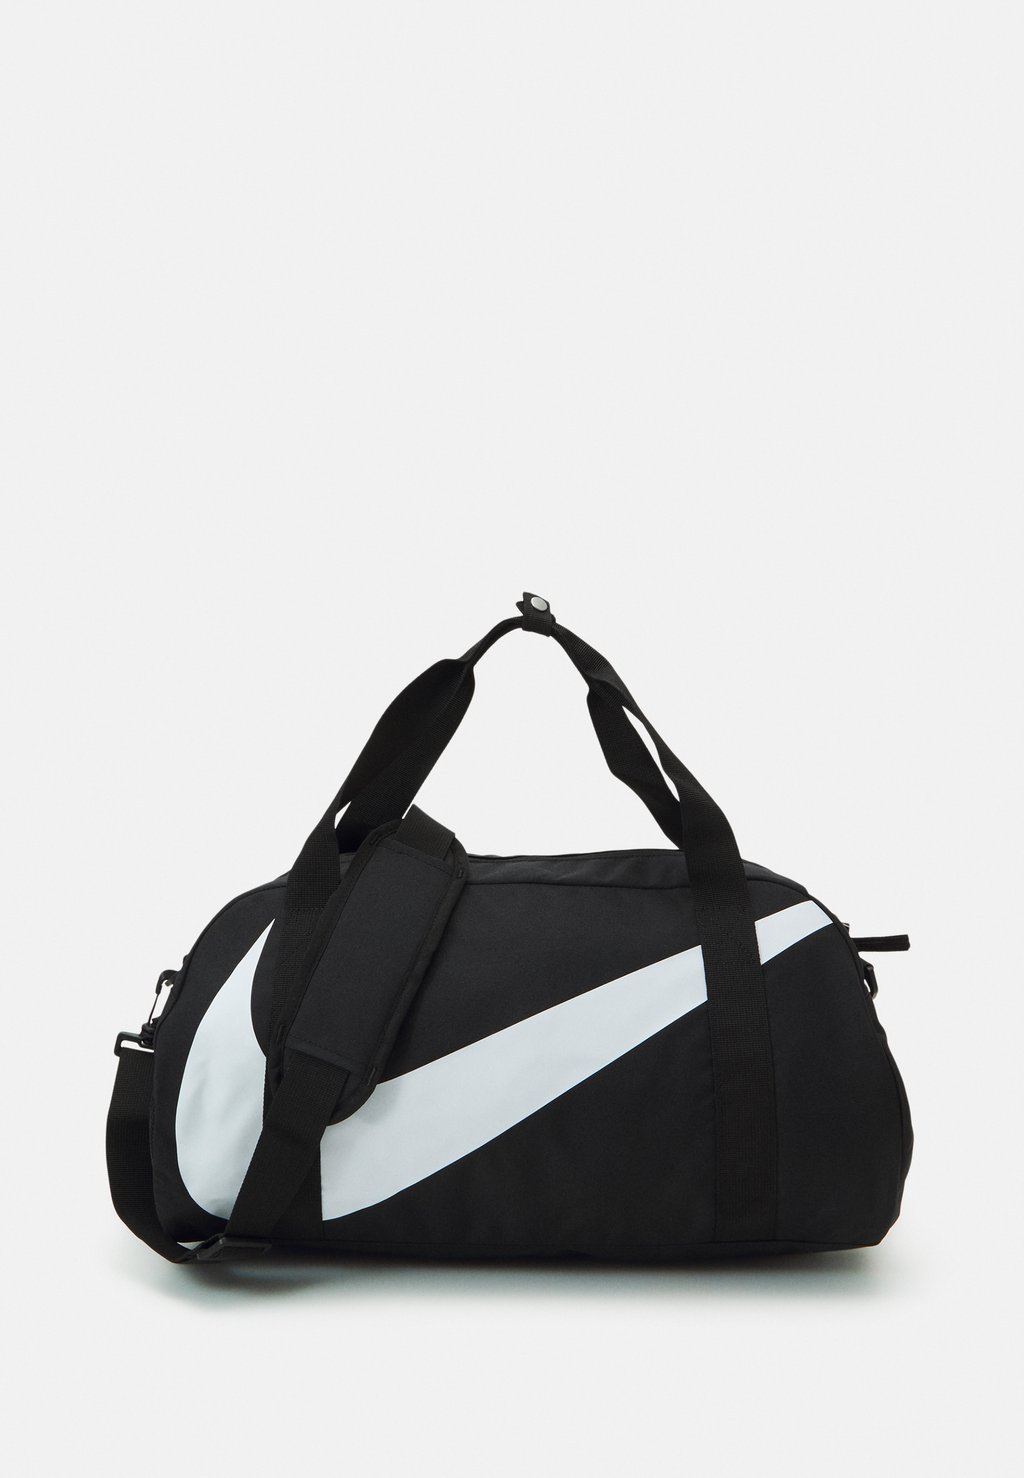 Спортивная сумка Gym Club Unisex Nike, цвет black/black/white сумка спортивная nike gym club retro серебристый